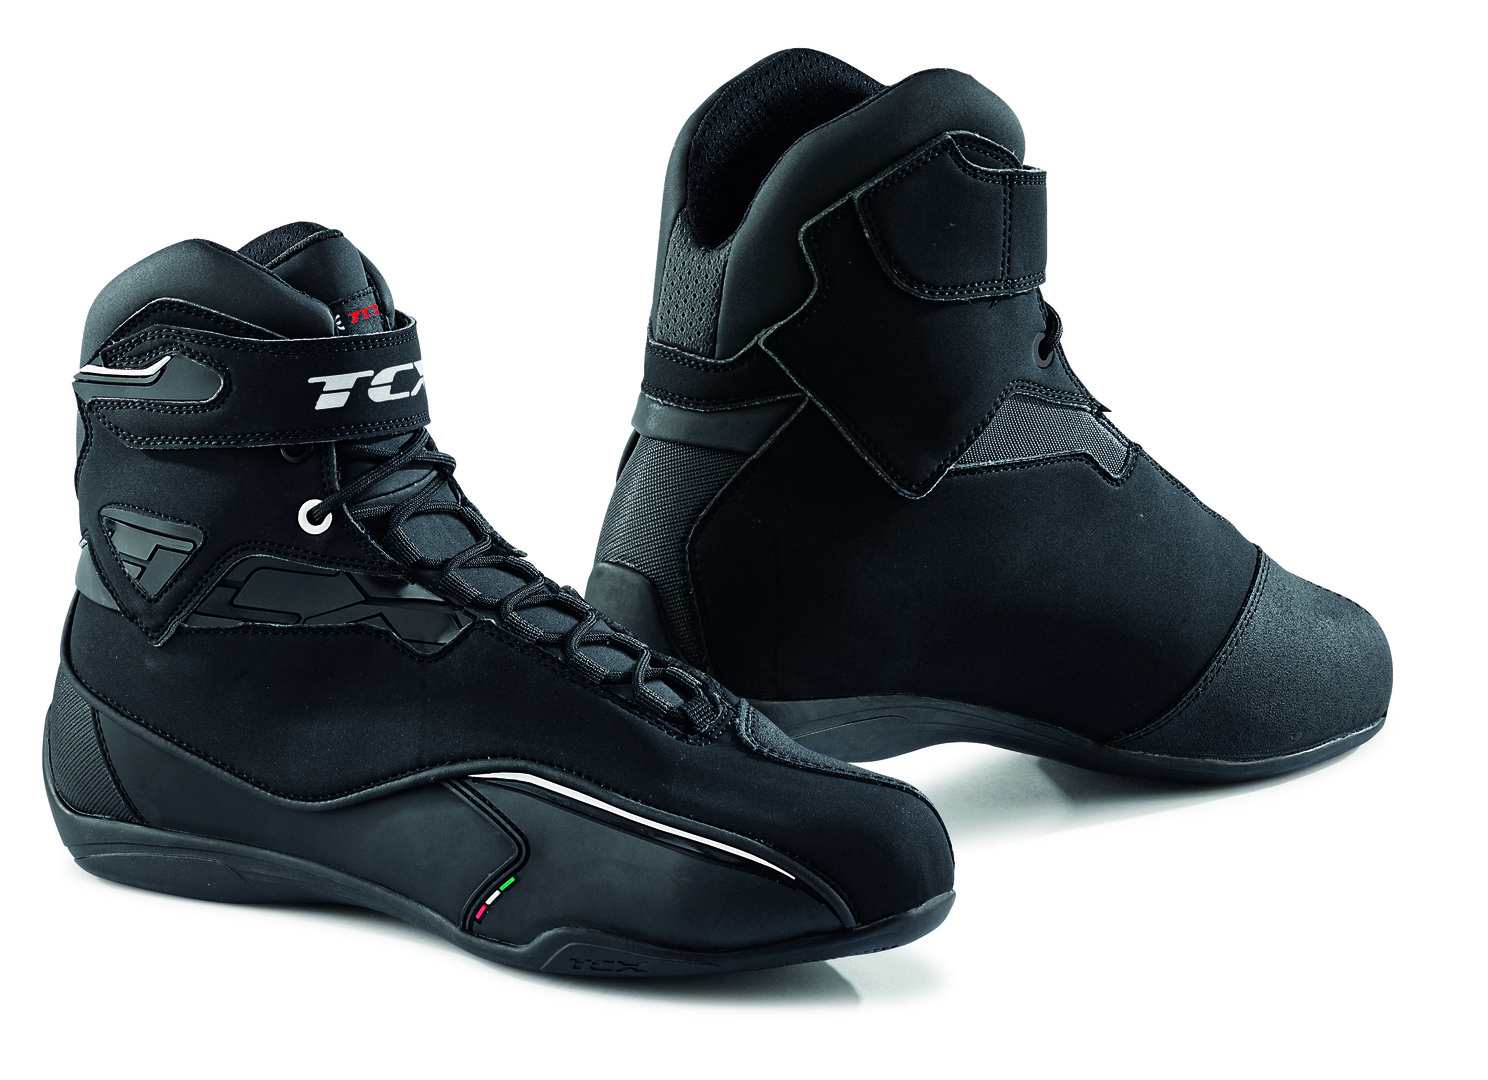 TCX Zeta Damen Sport-Schuh 149,95€